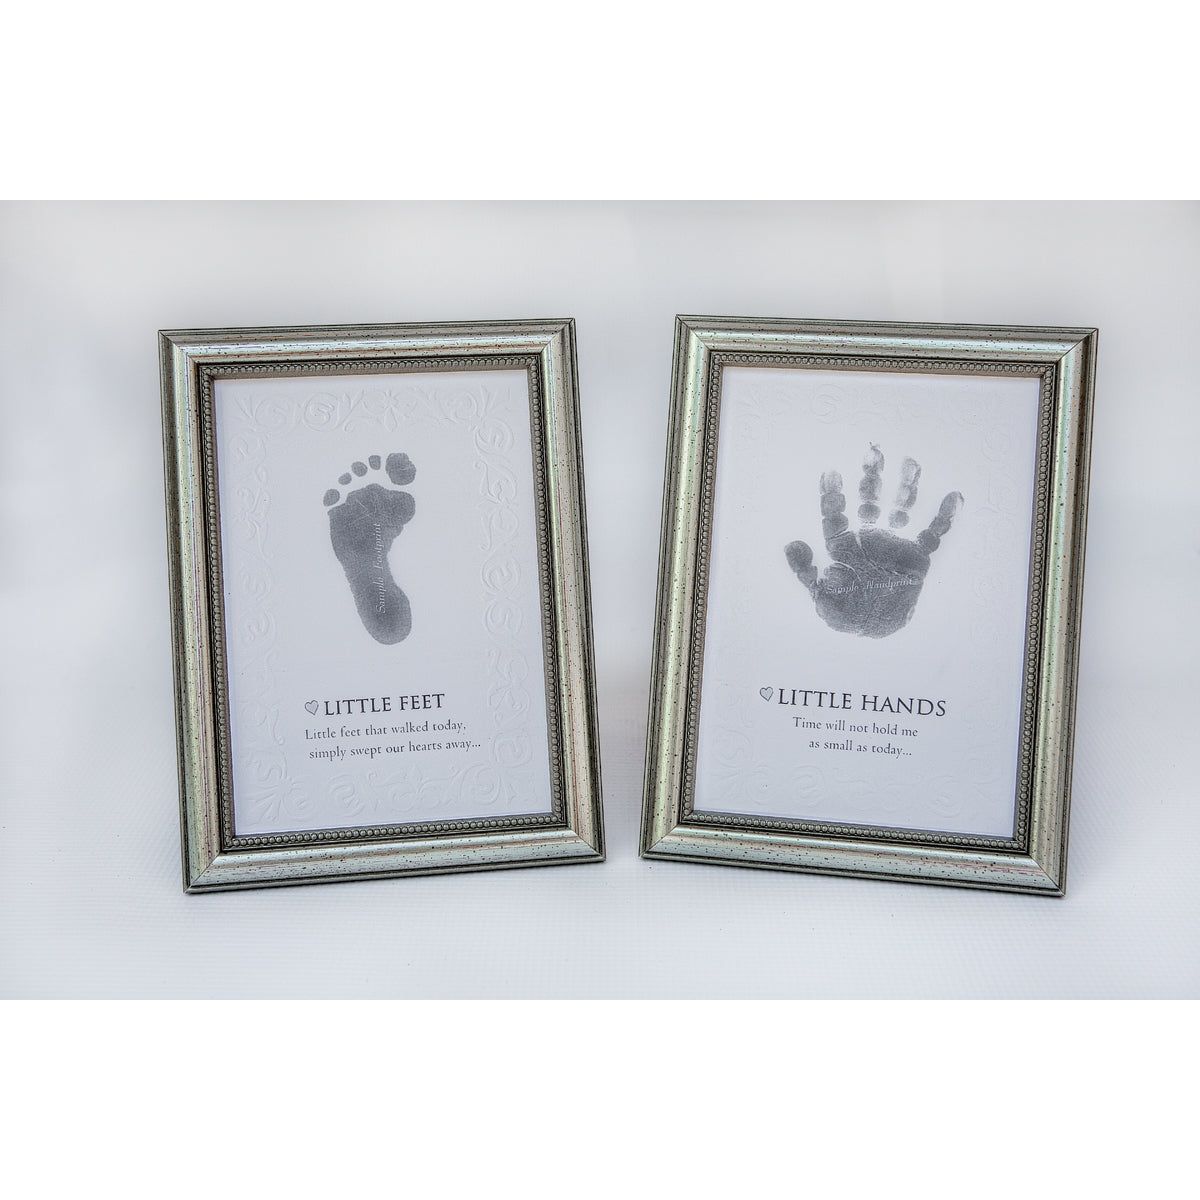 Little Feet Frame: Footprint Keepsake 5x7